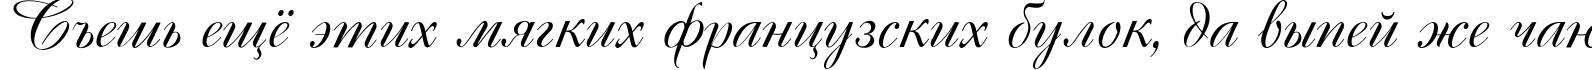 Пример написания шрифтом Cassandra текста на русском